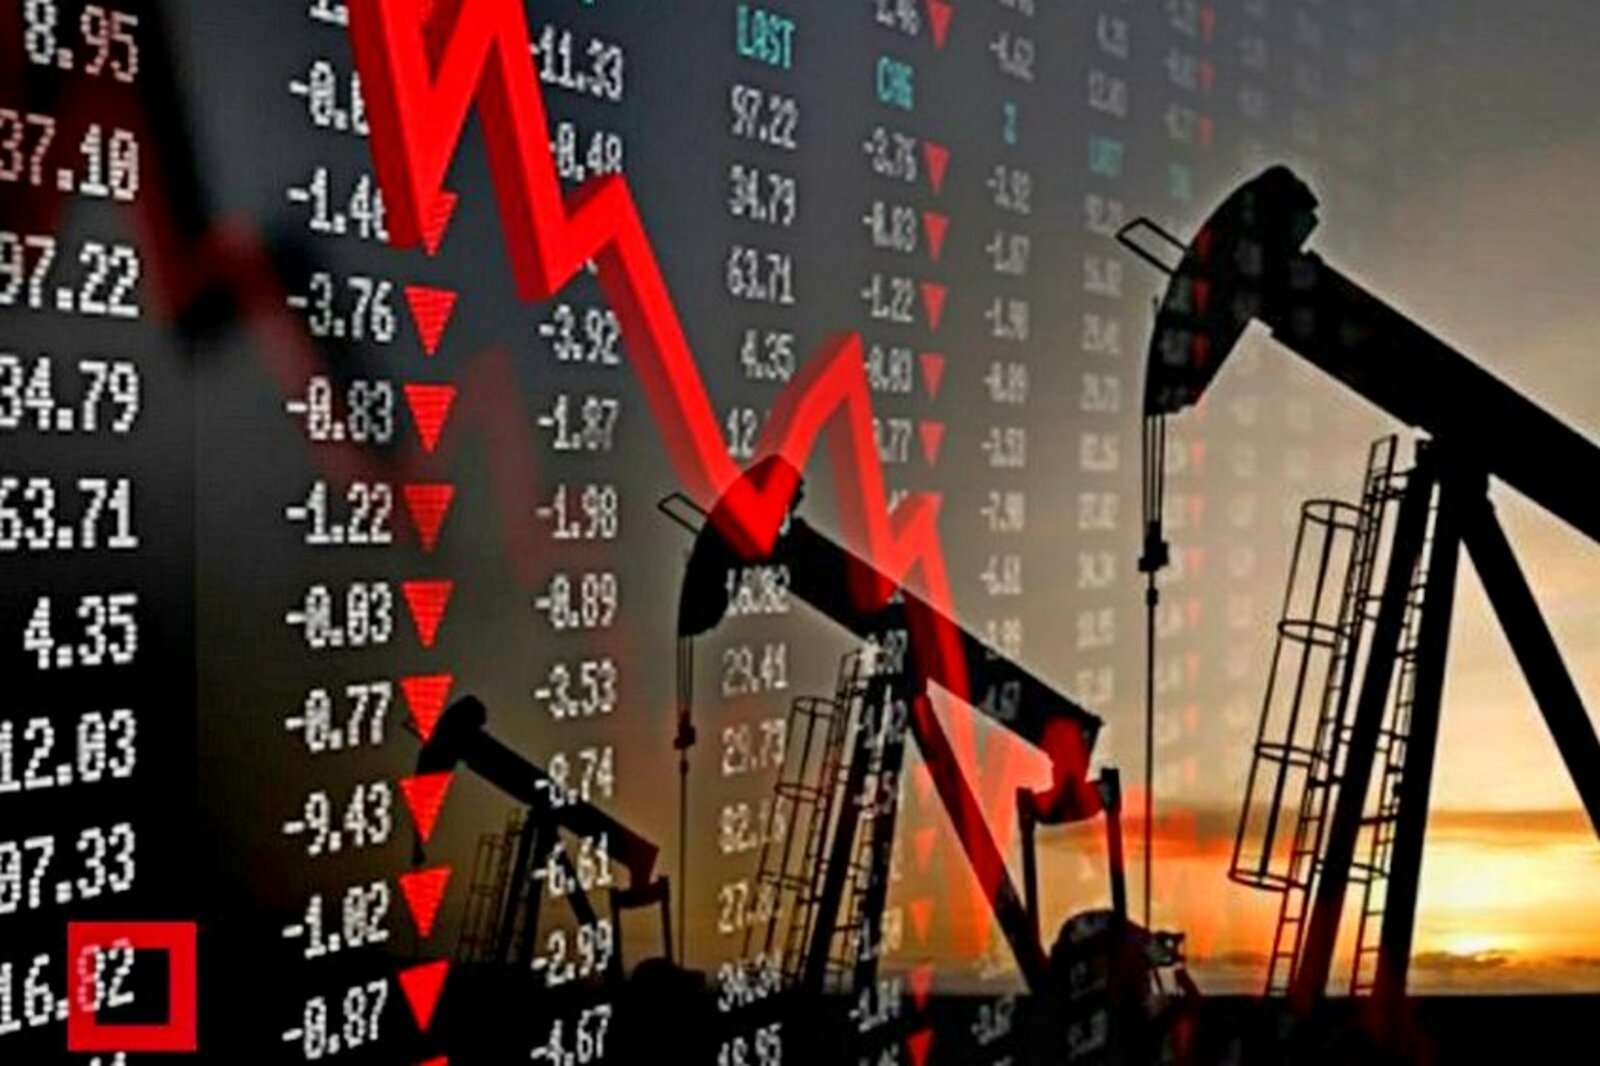 Цены на нефть упали после беседы Трампа с саудовскими властями